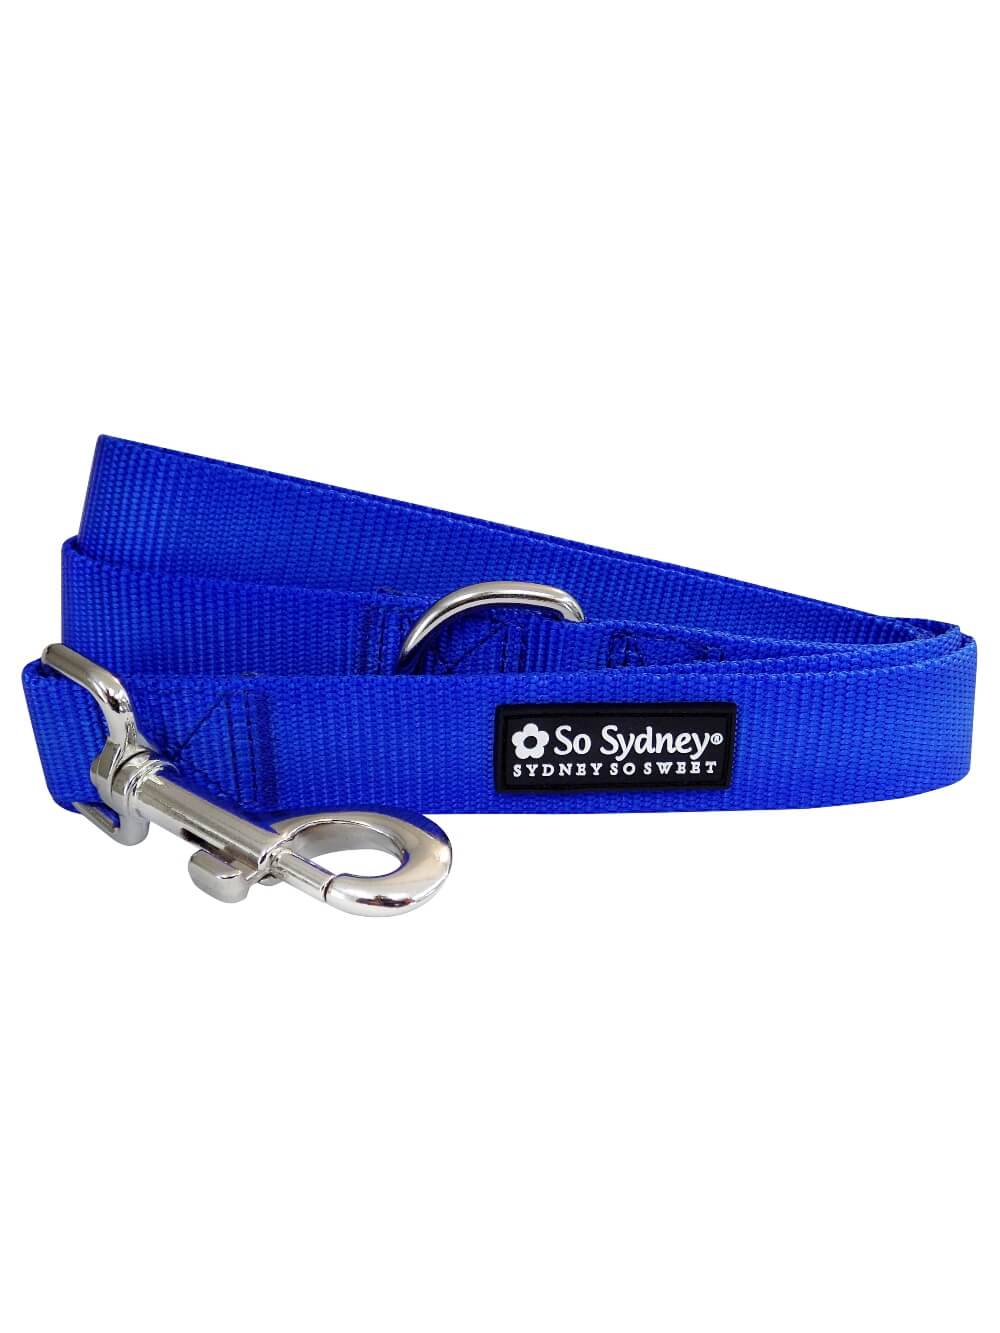 Royal Blue 5' Basic Nylon Dog Leash for Small, Medium, or Large Dogs - Sydney So Sweet